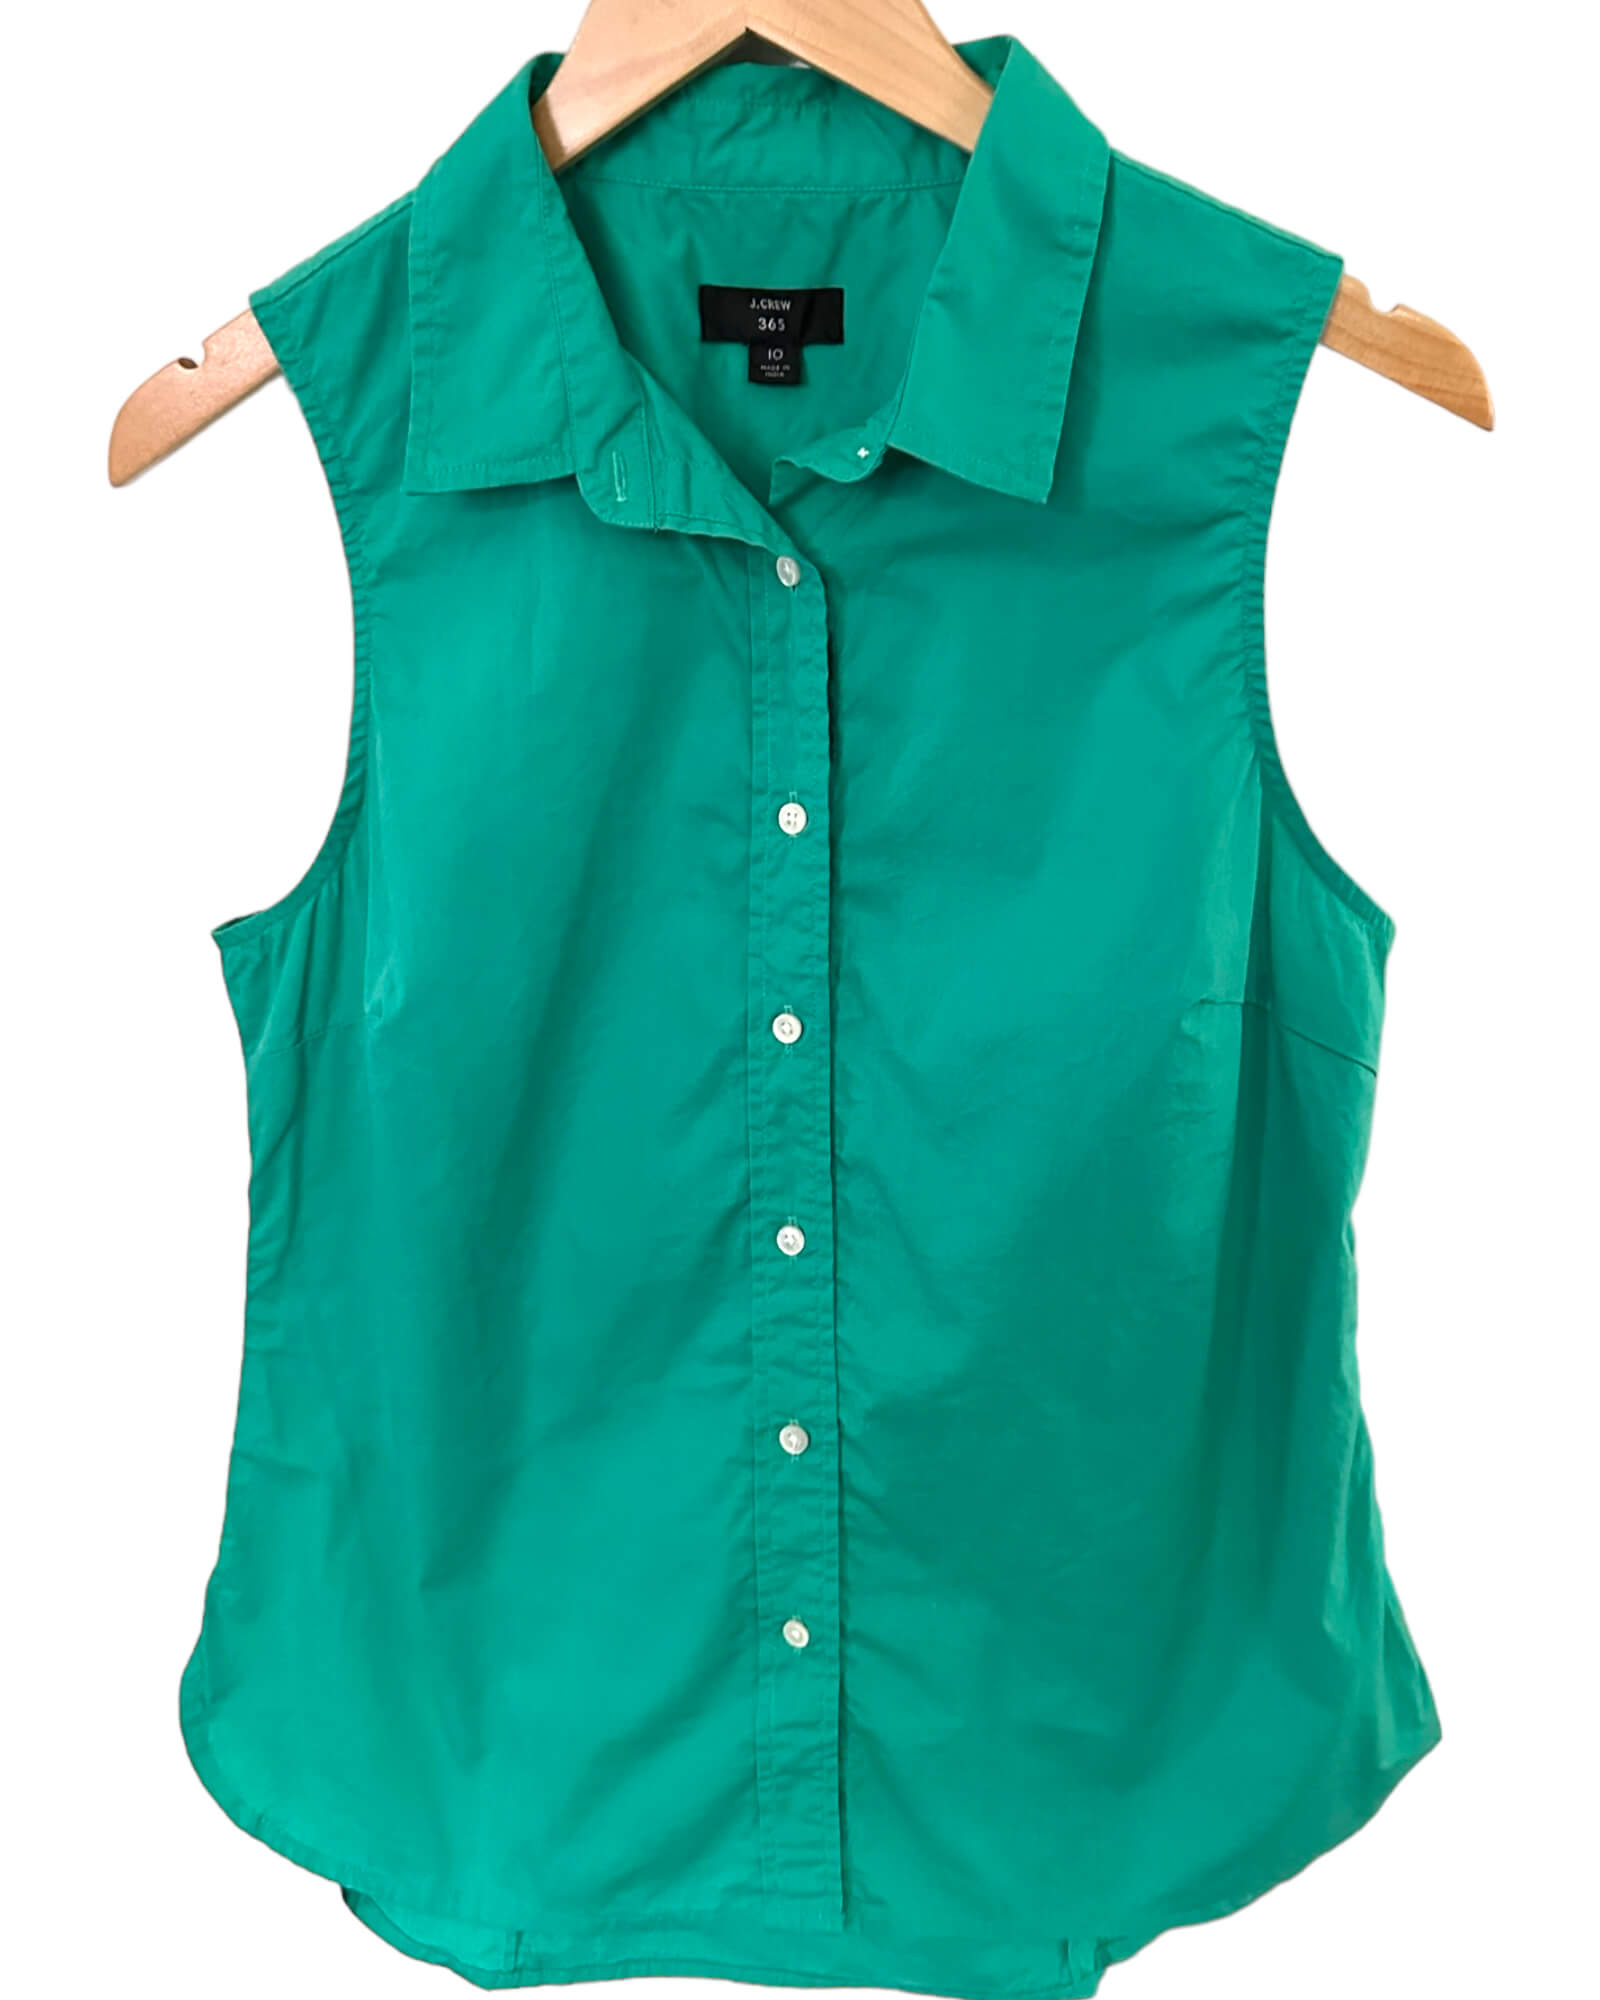 Light Spring J.CREW 365 shamrock green sleeveless button down shirt